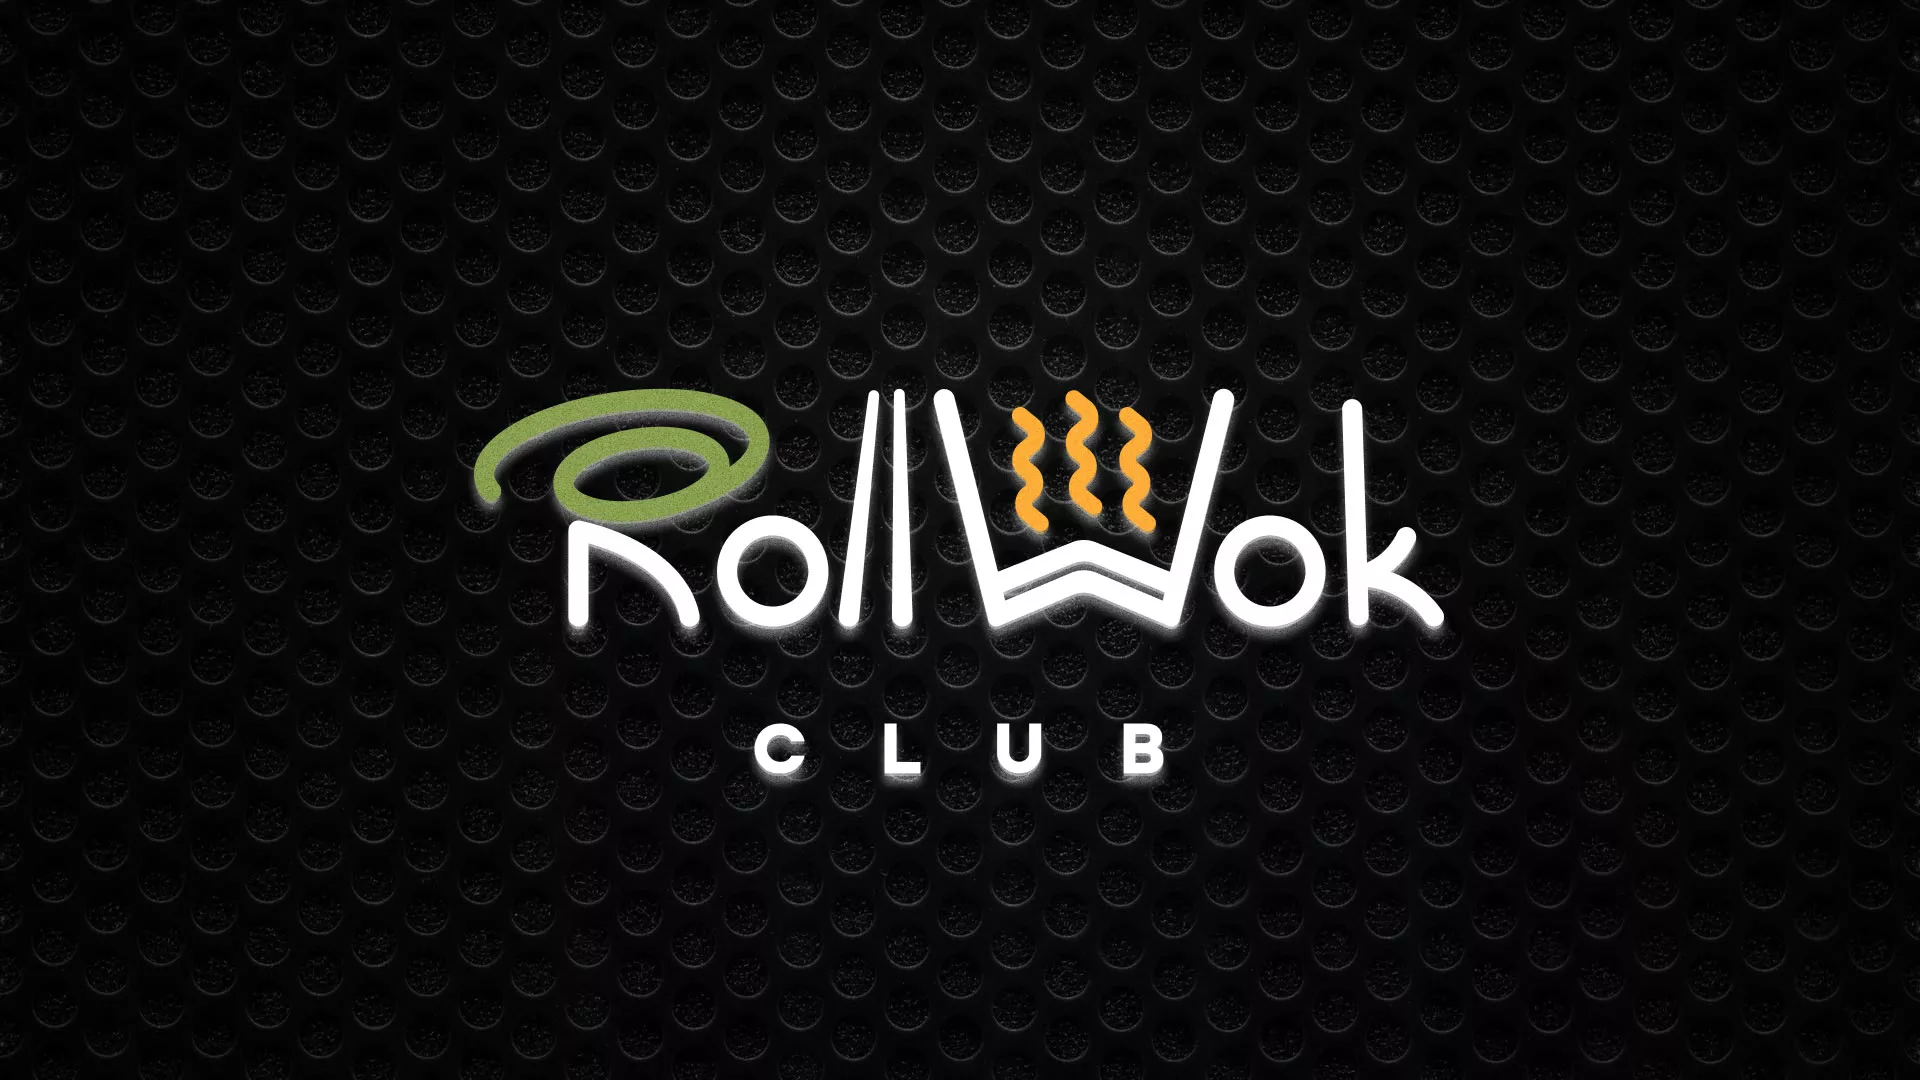 Брендирование торговых точек суши-бара «Roll Wok Club» в Орле